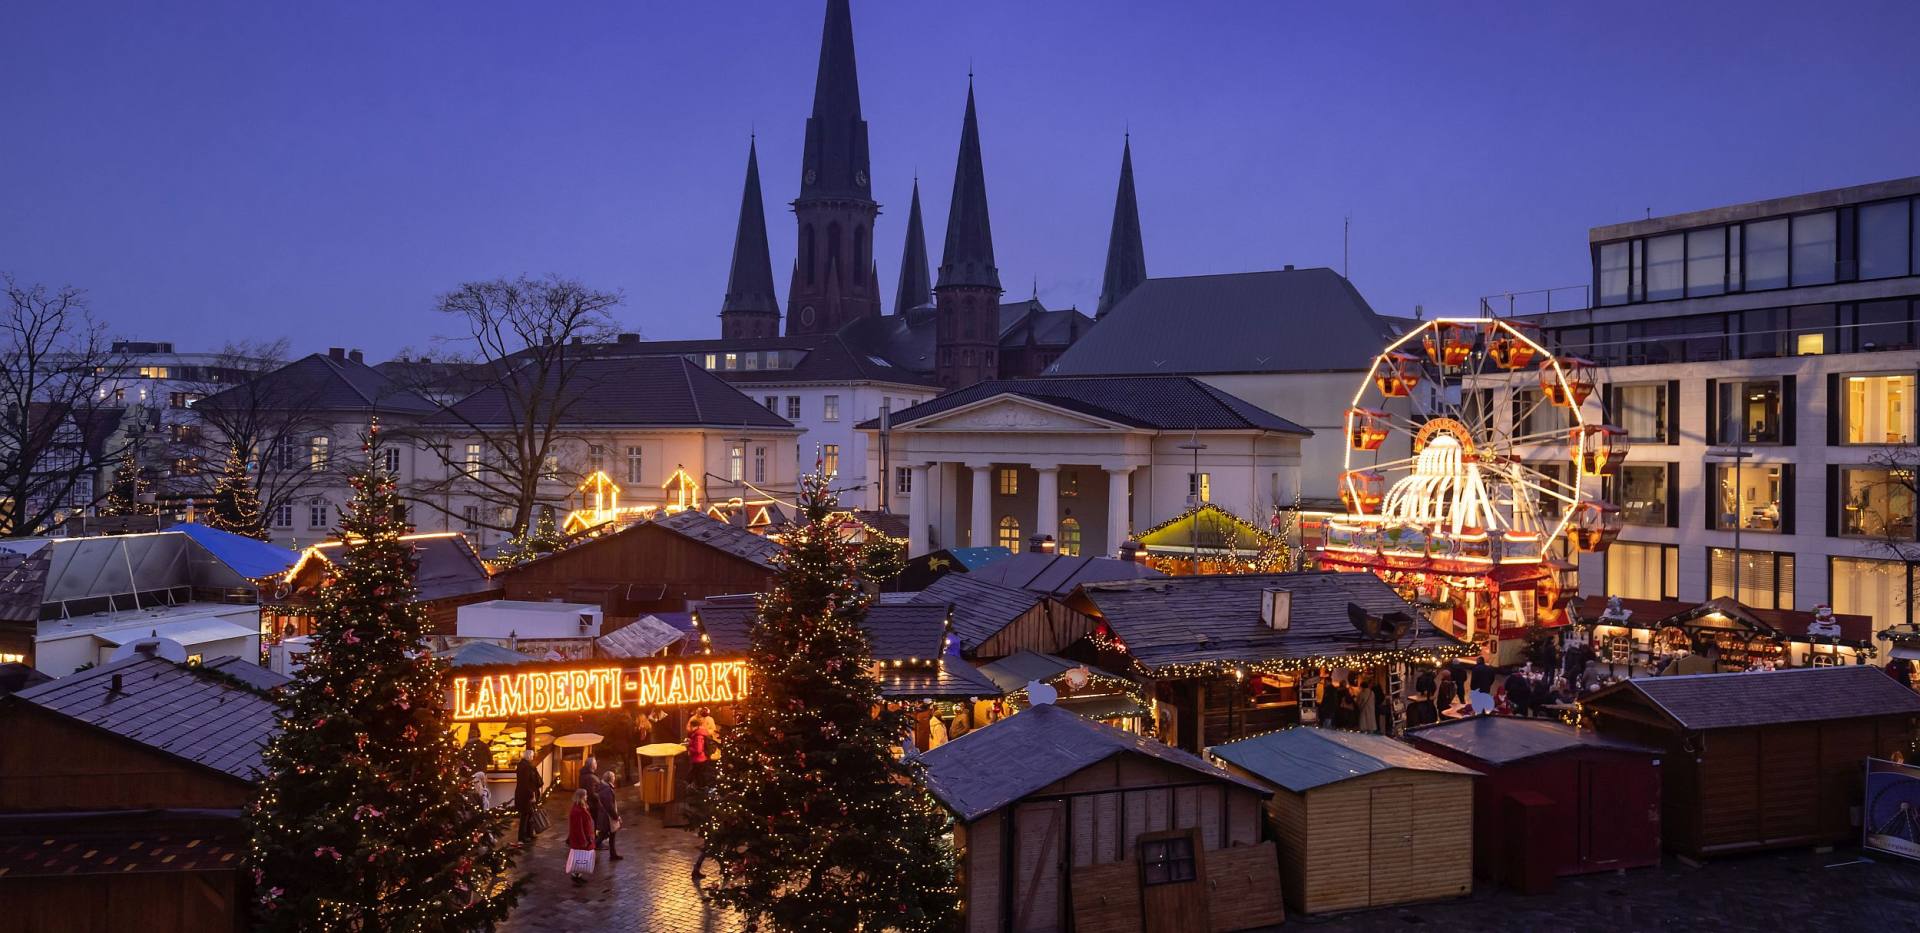 Oldenburger Weihnachtsmarkt auf dem Schlossplatz mit der Schlosswache und der St. Lamberti-Kirche im Hintergrund.